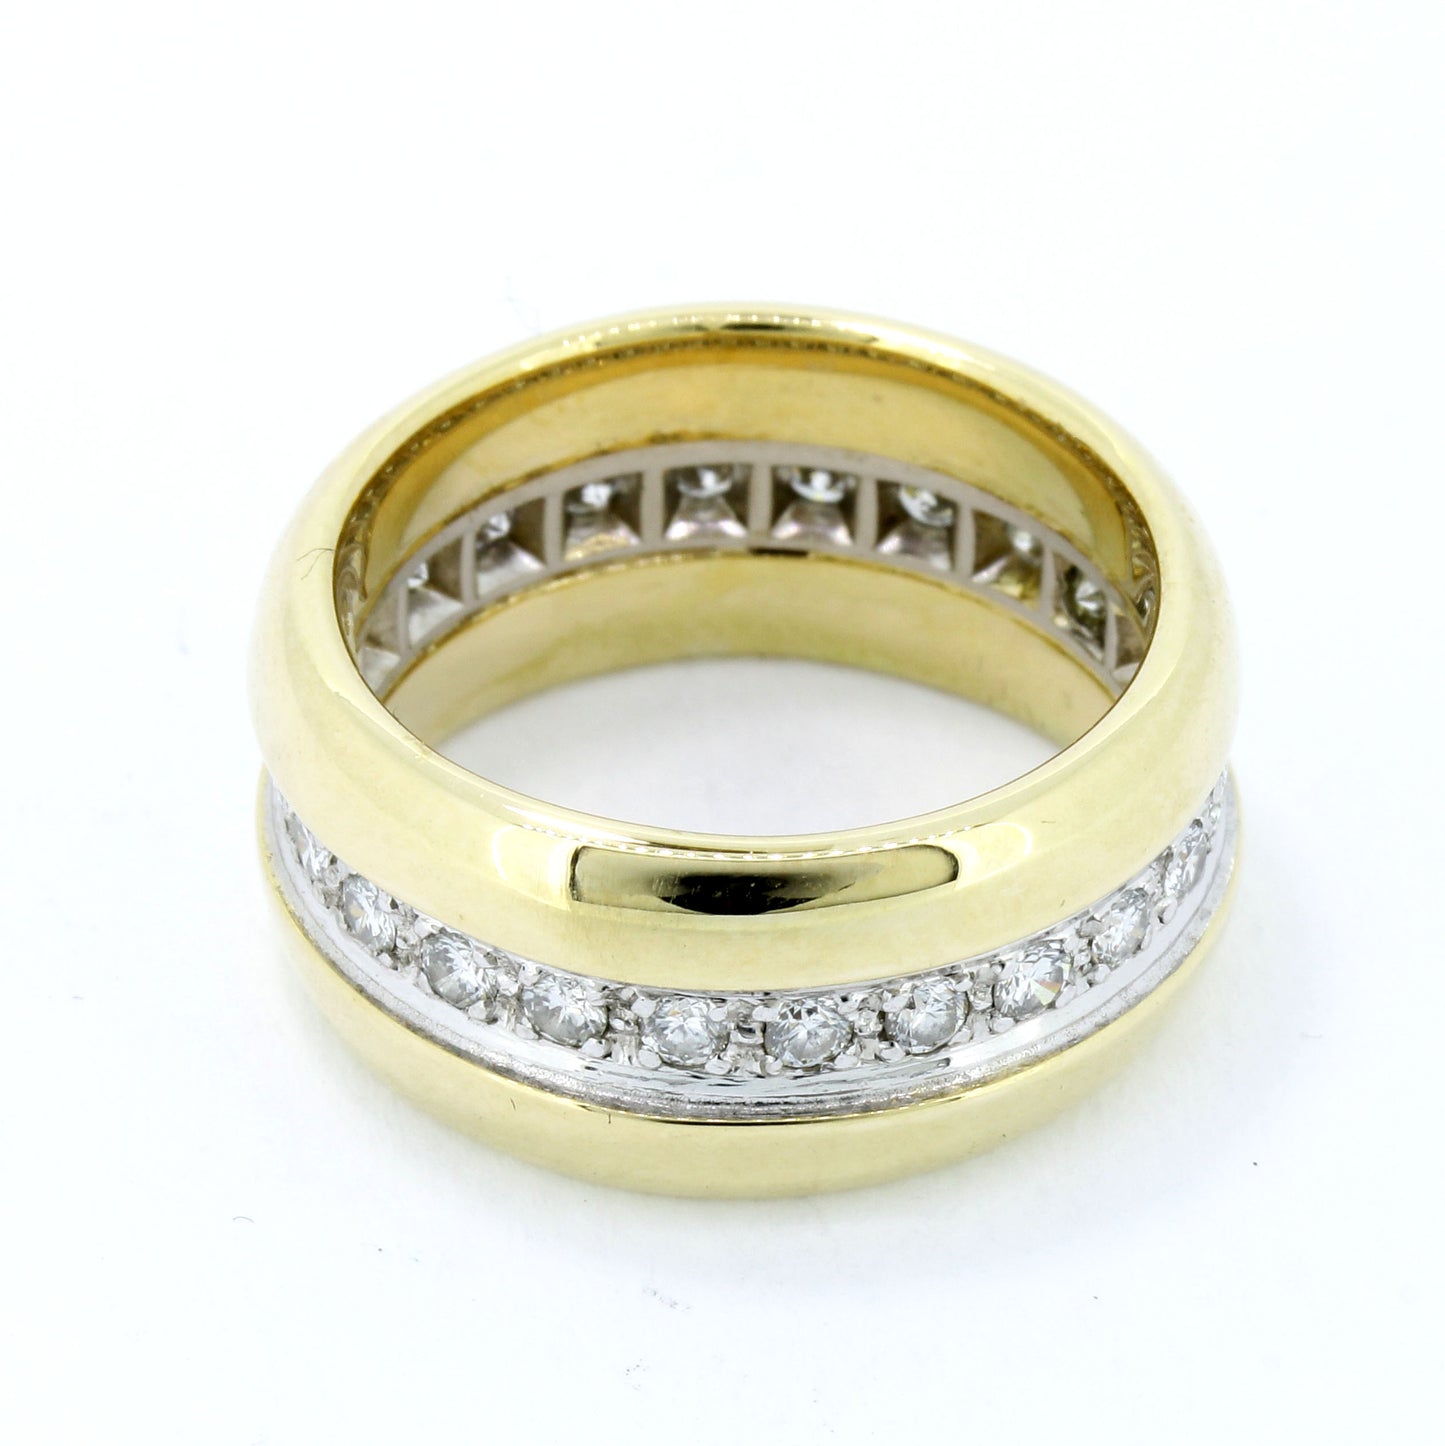 Diamant Ring 585 Gold 14 Kt Brillanten ca. 1,40 ct SI